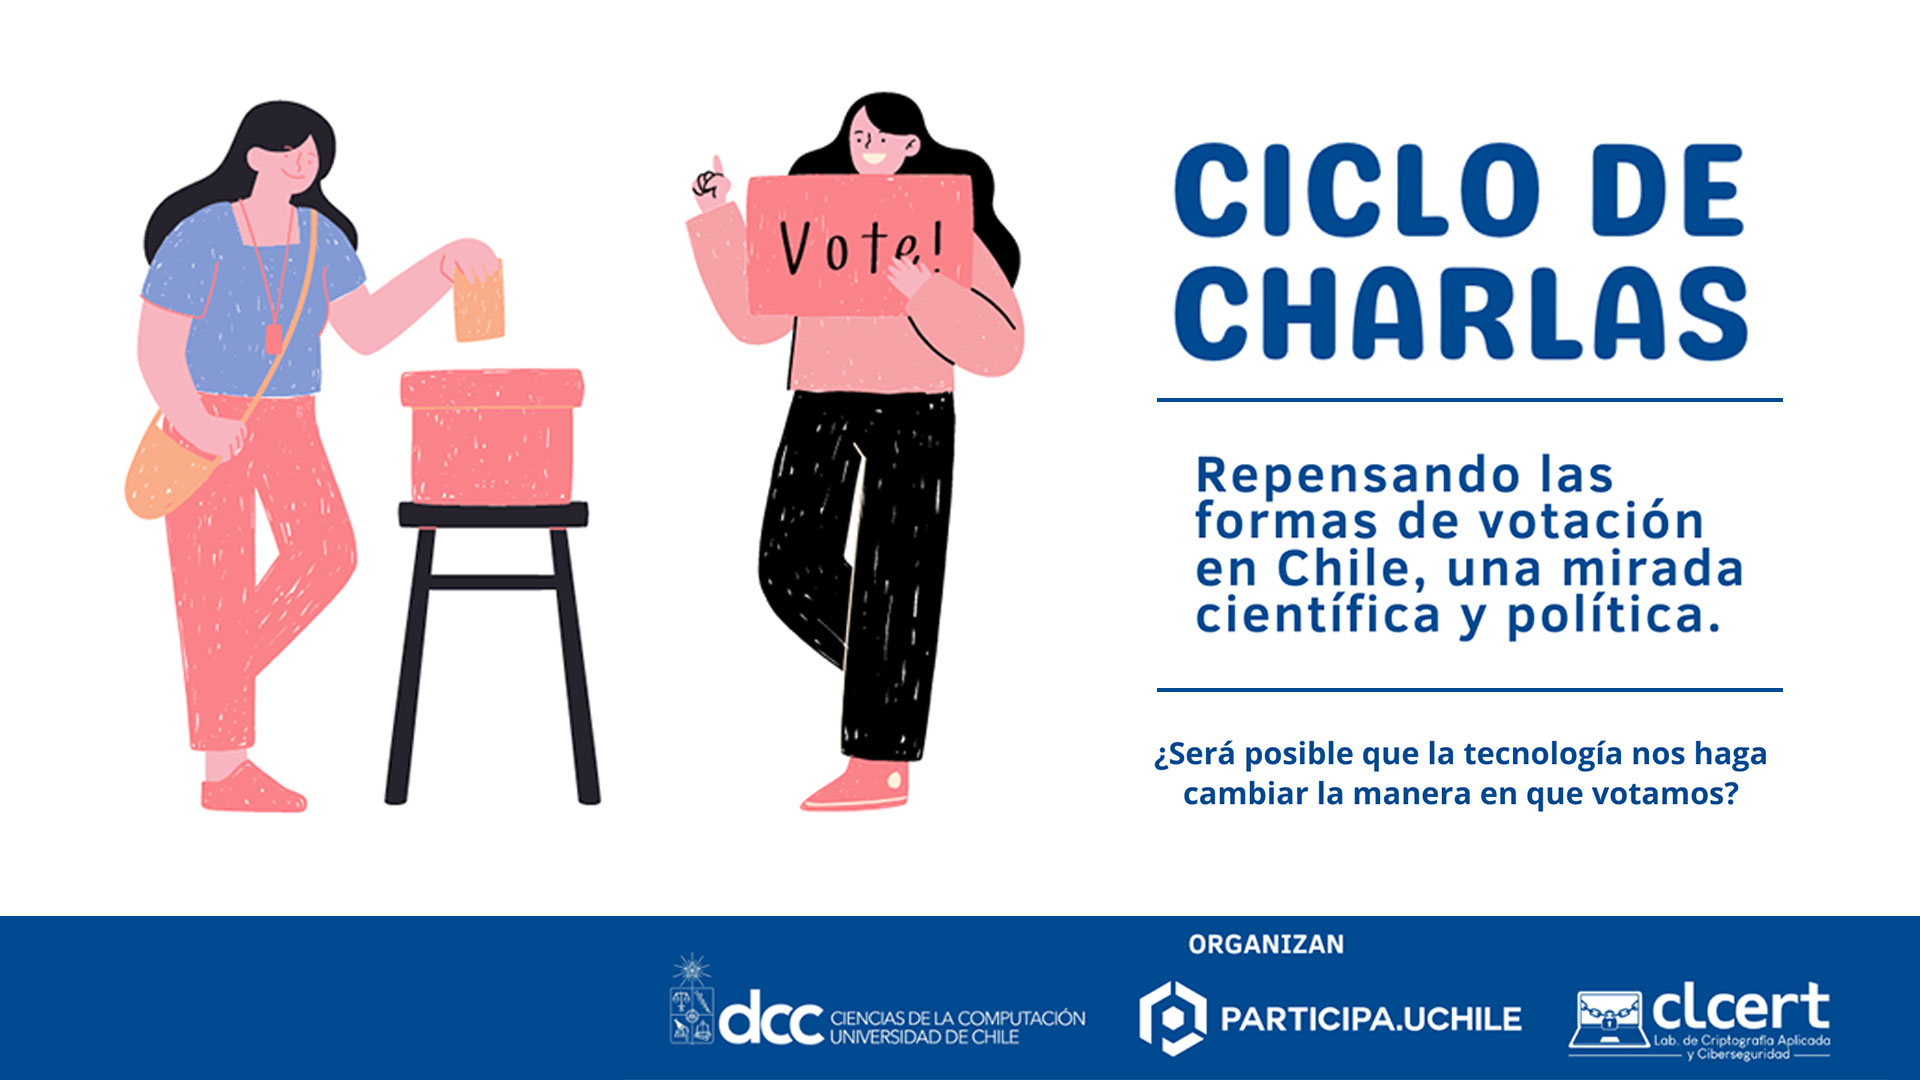 Participa UChile organiza un espacio de reflexión y análisis sobre las formas de votación en Chile.